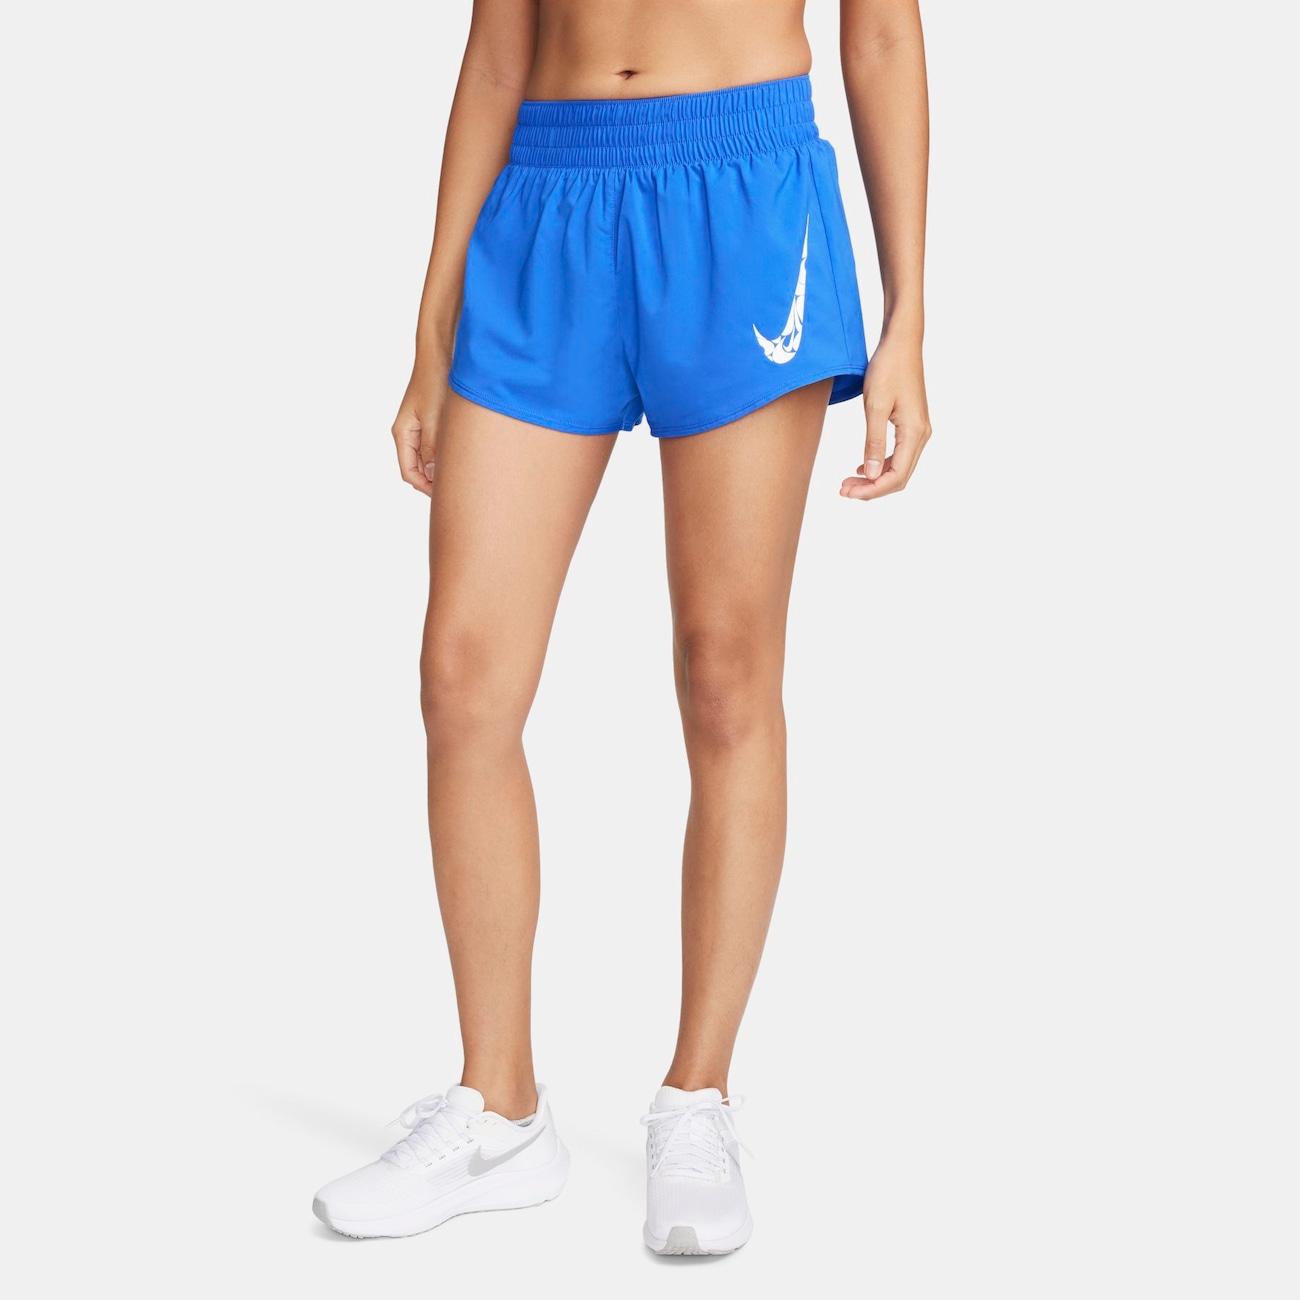 Shorts Nike One Swoosh Feminino